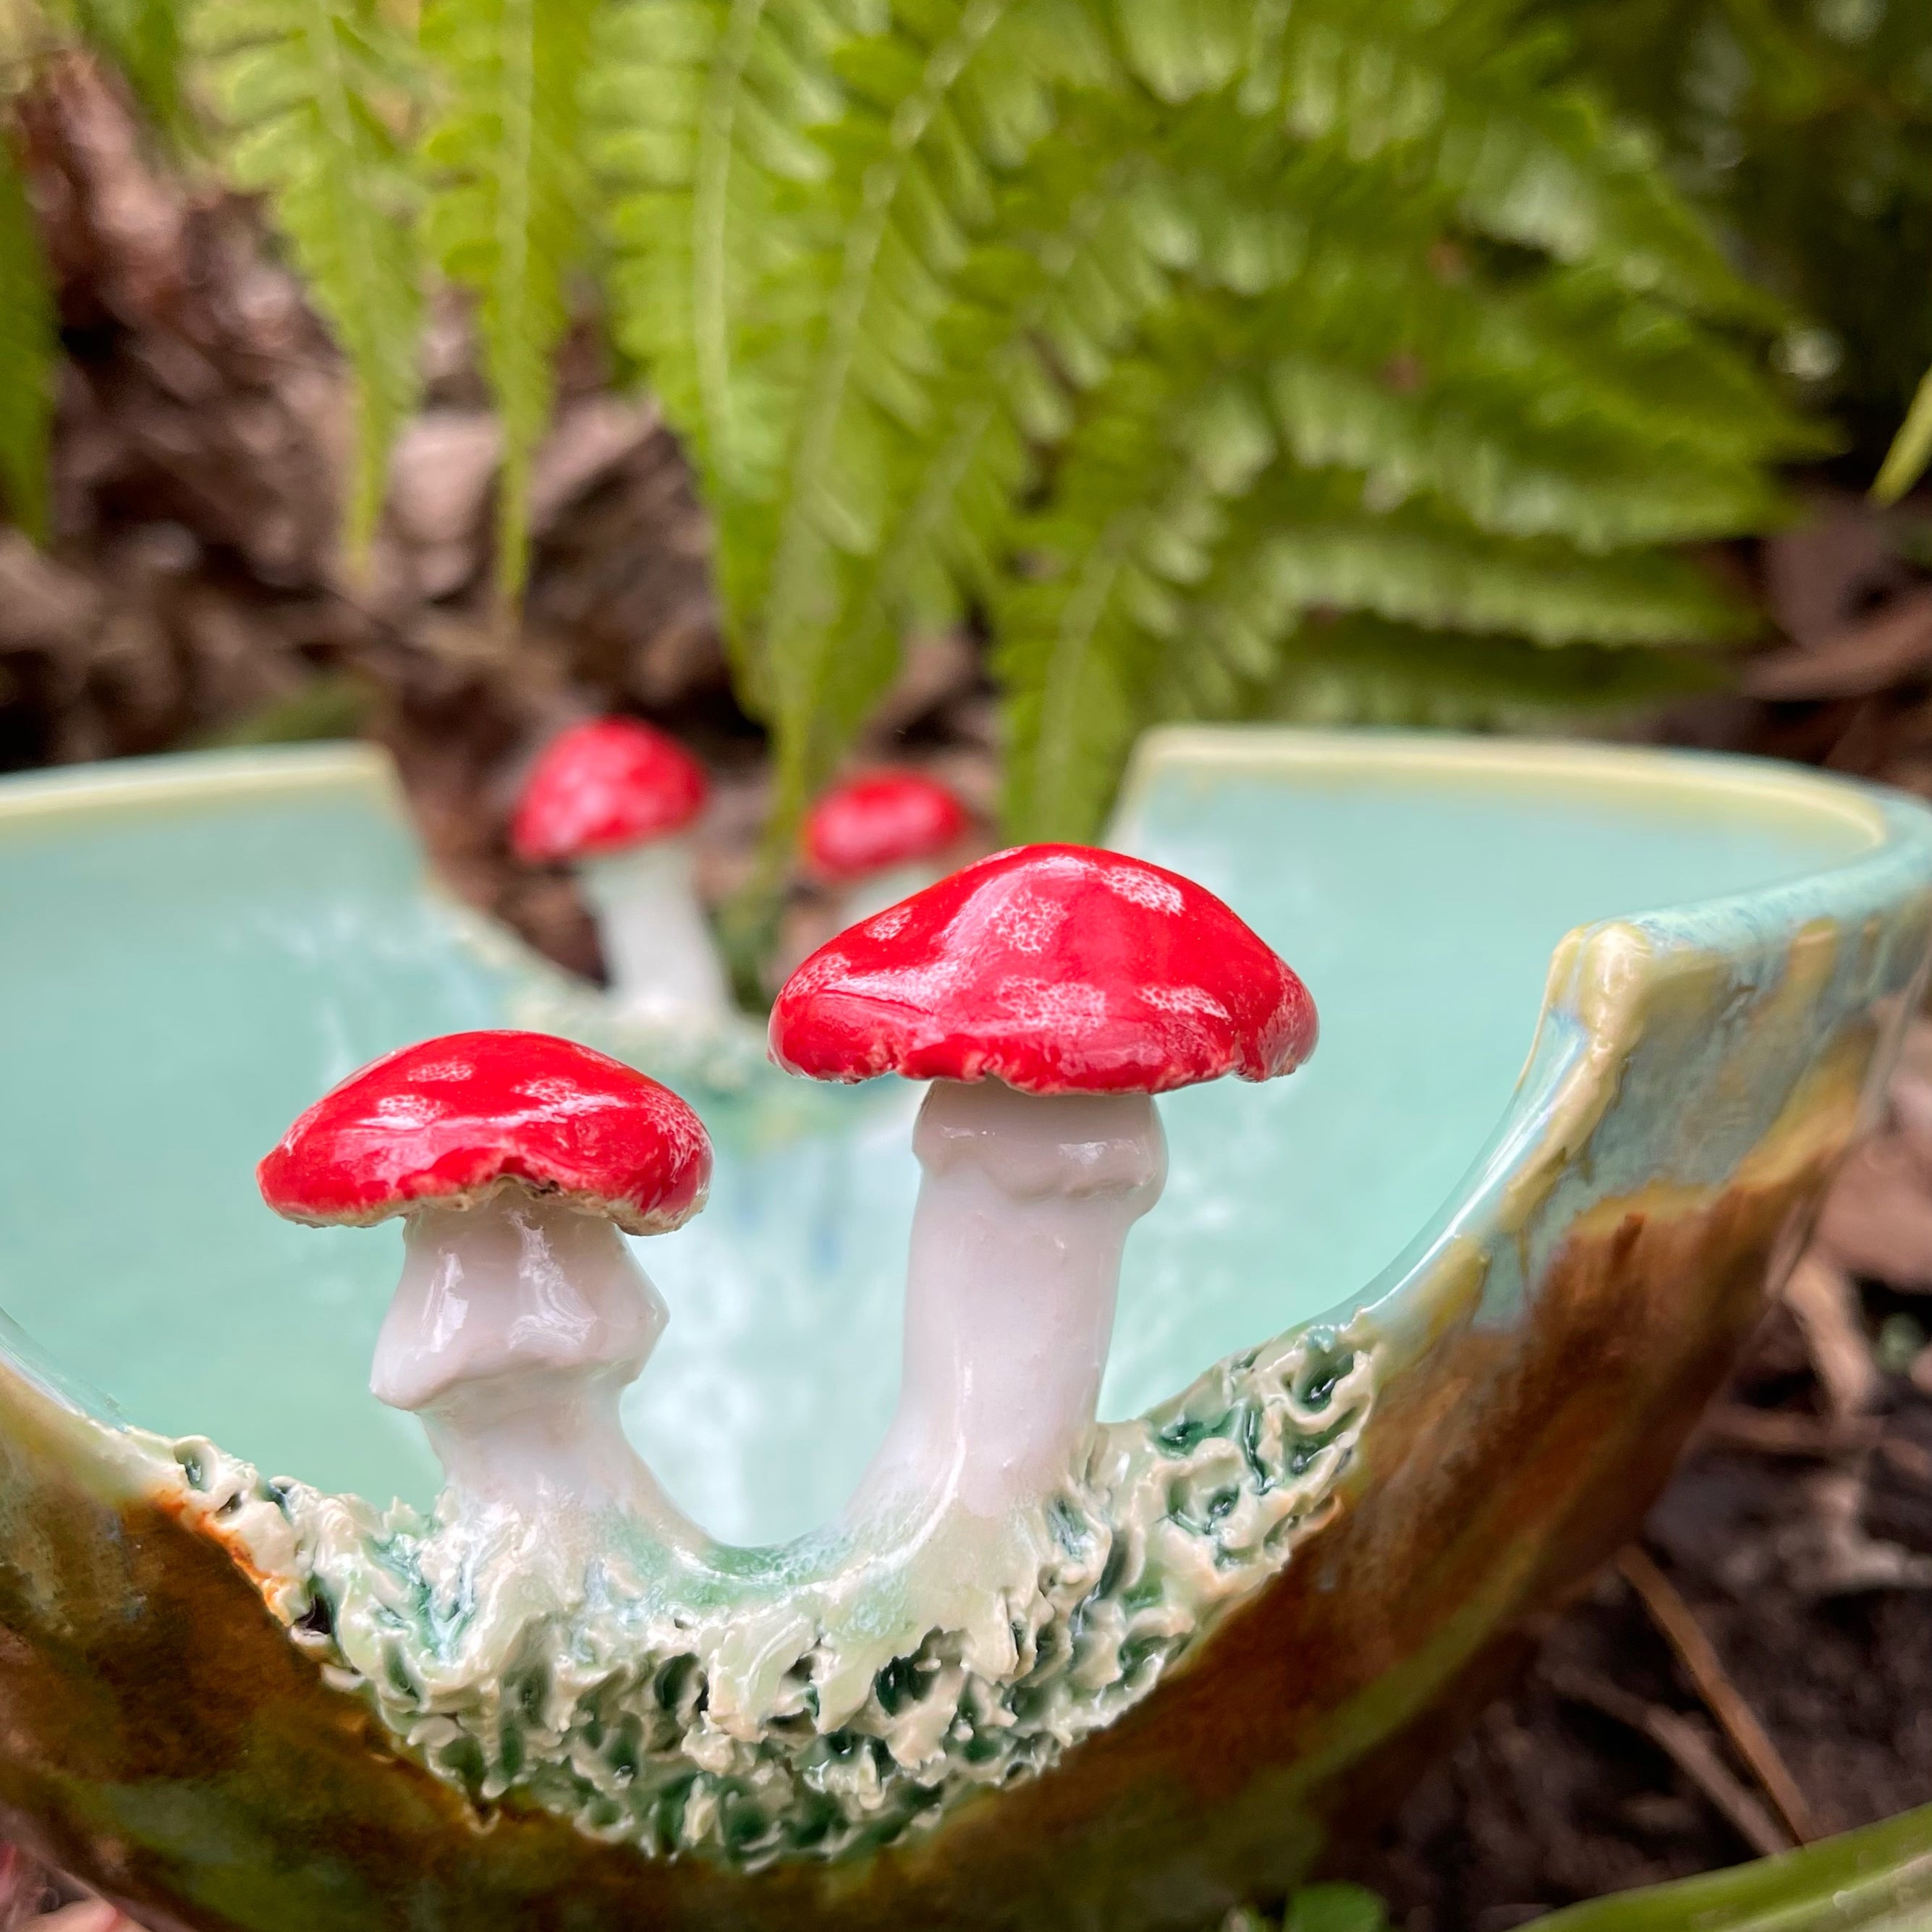 Ceramic art with mushrooms 